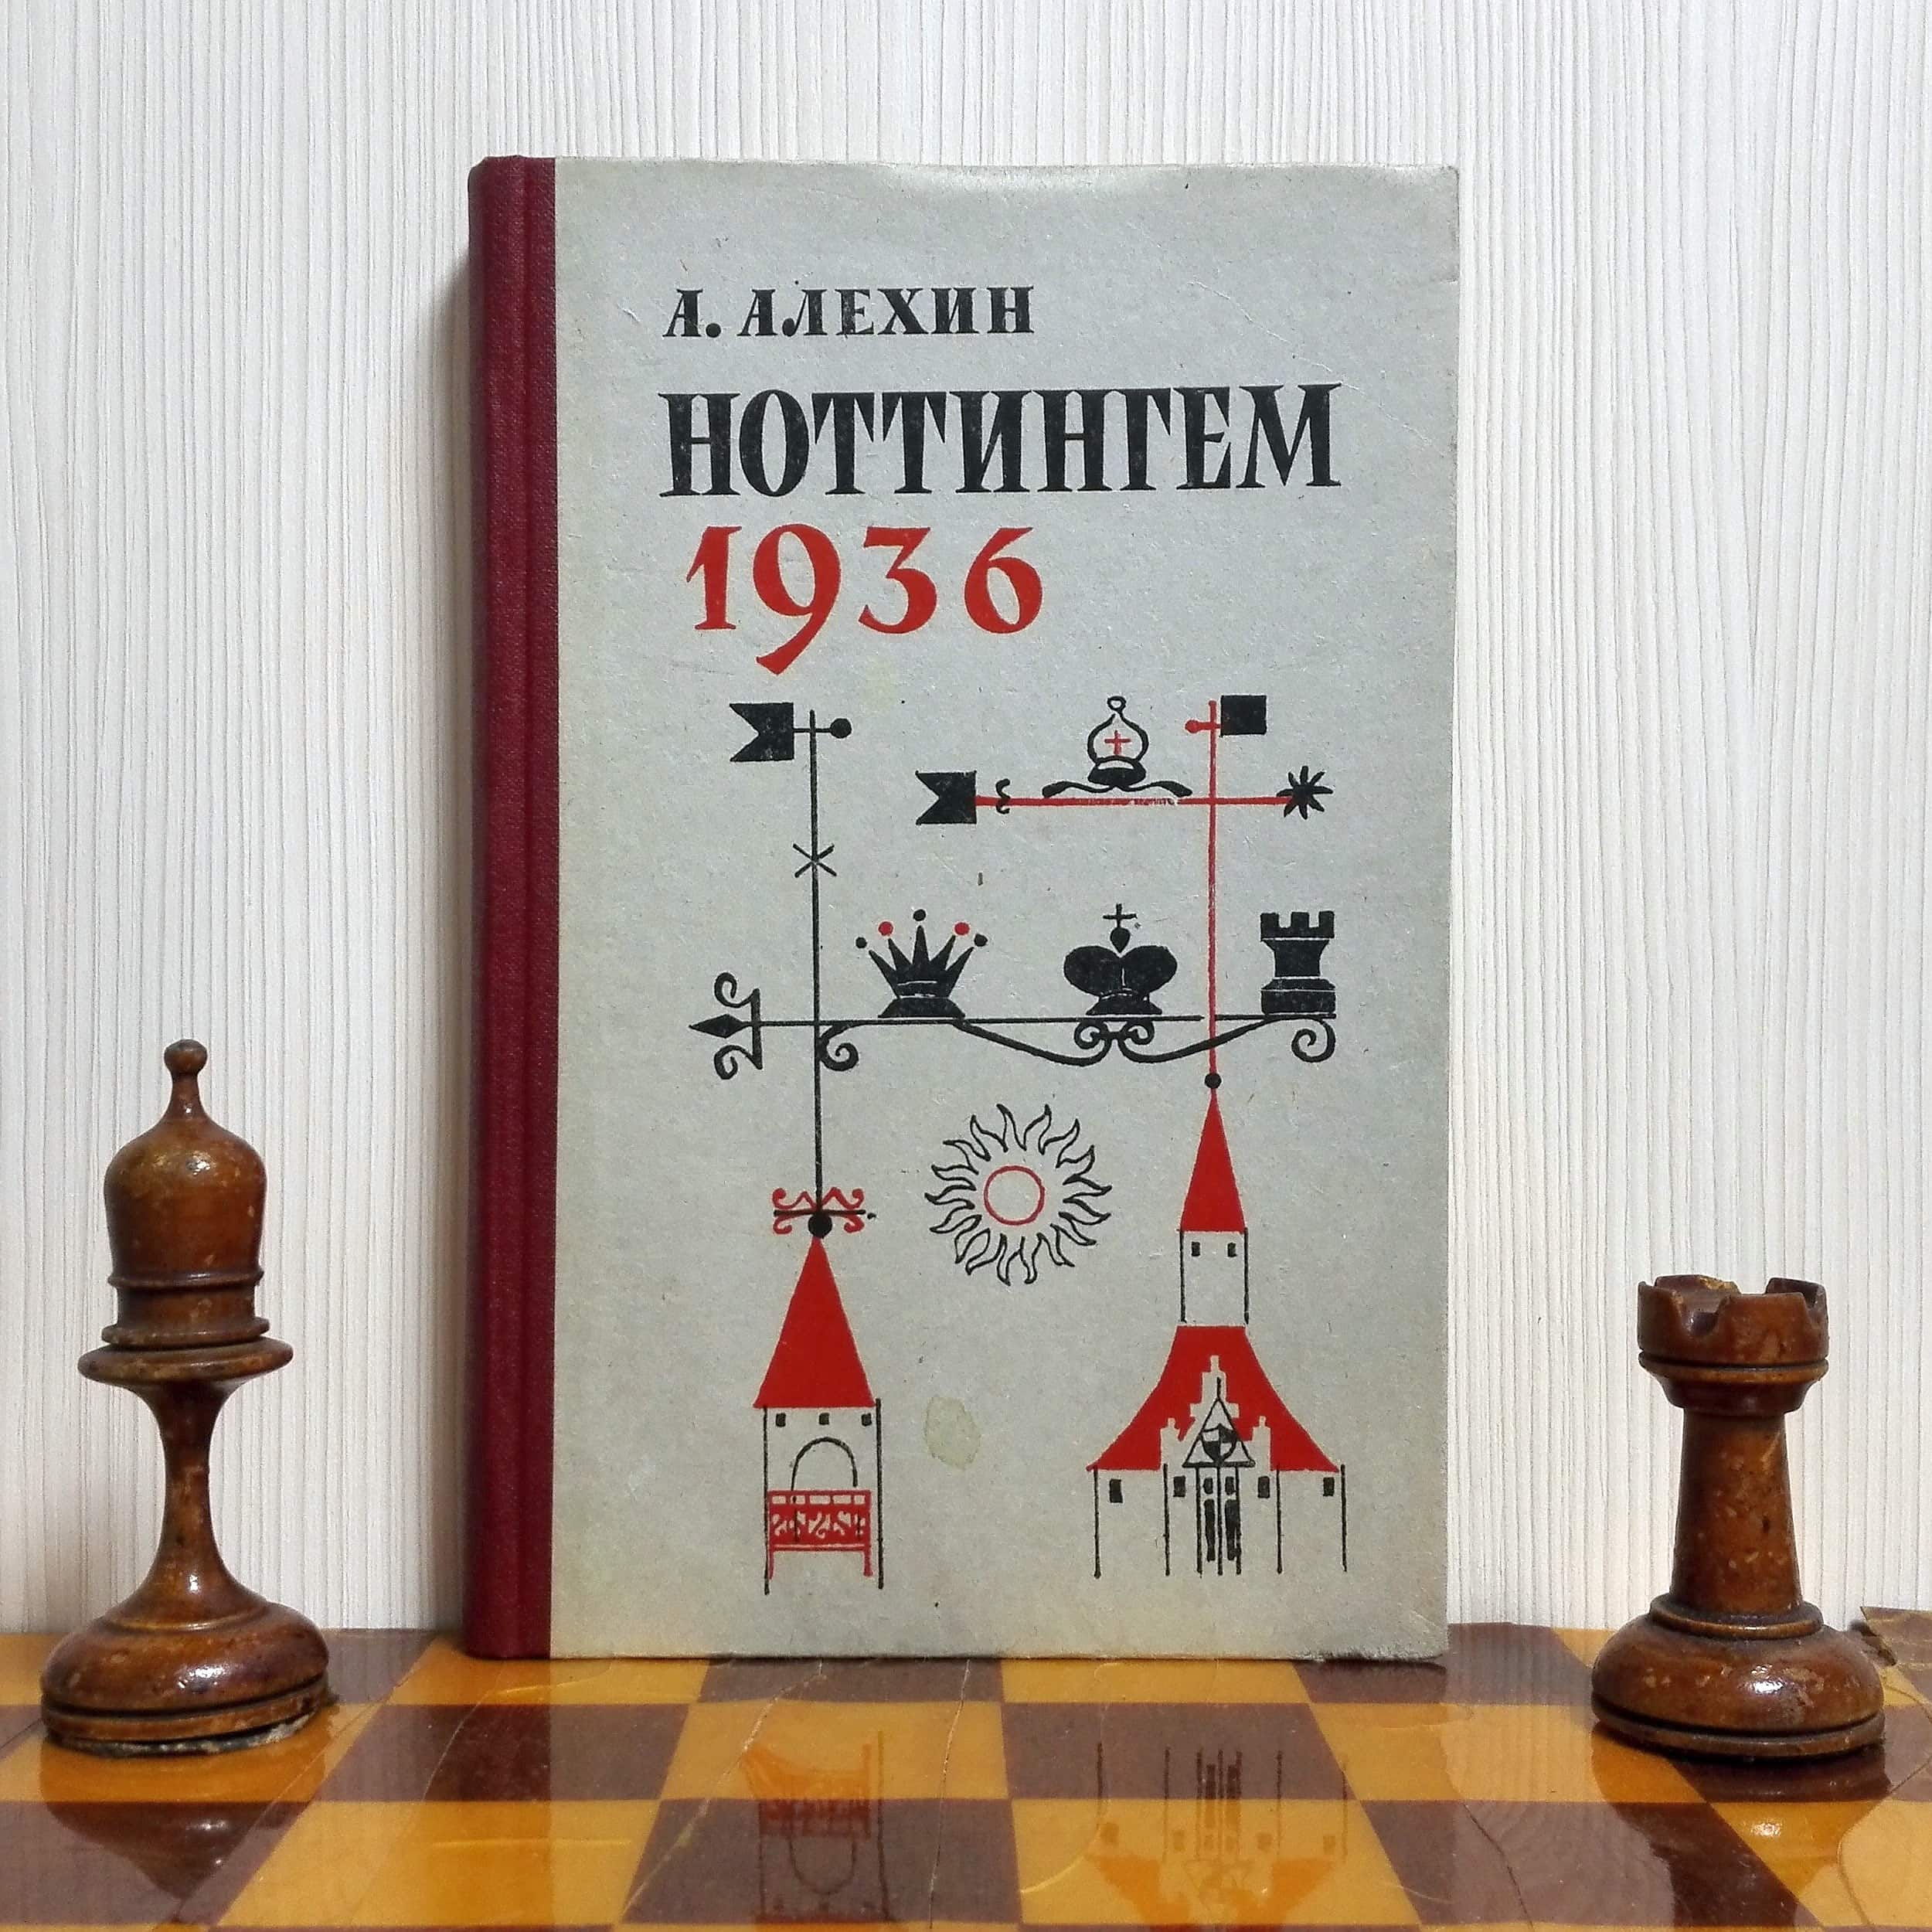 alekhin nottingham 1936 chess book